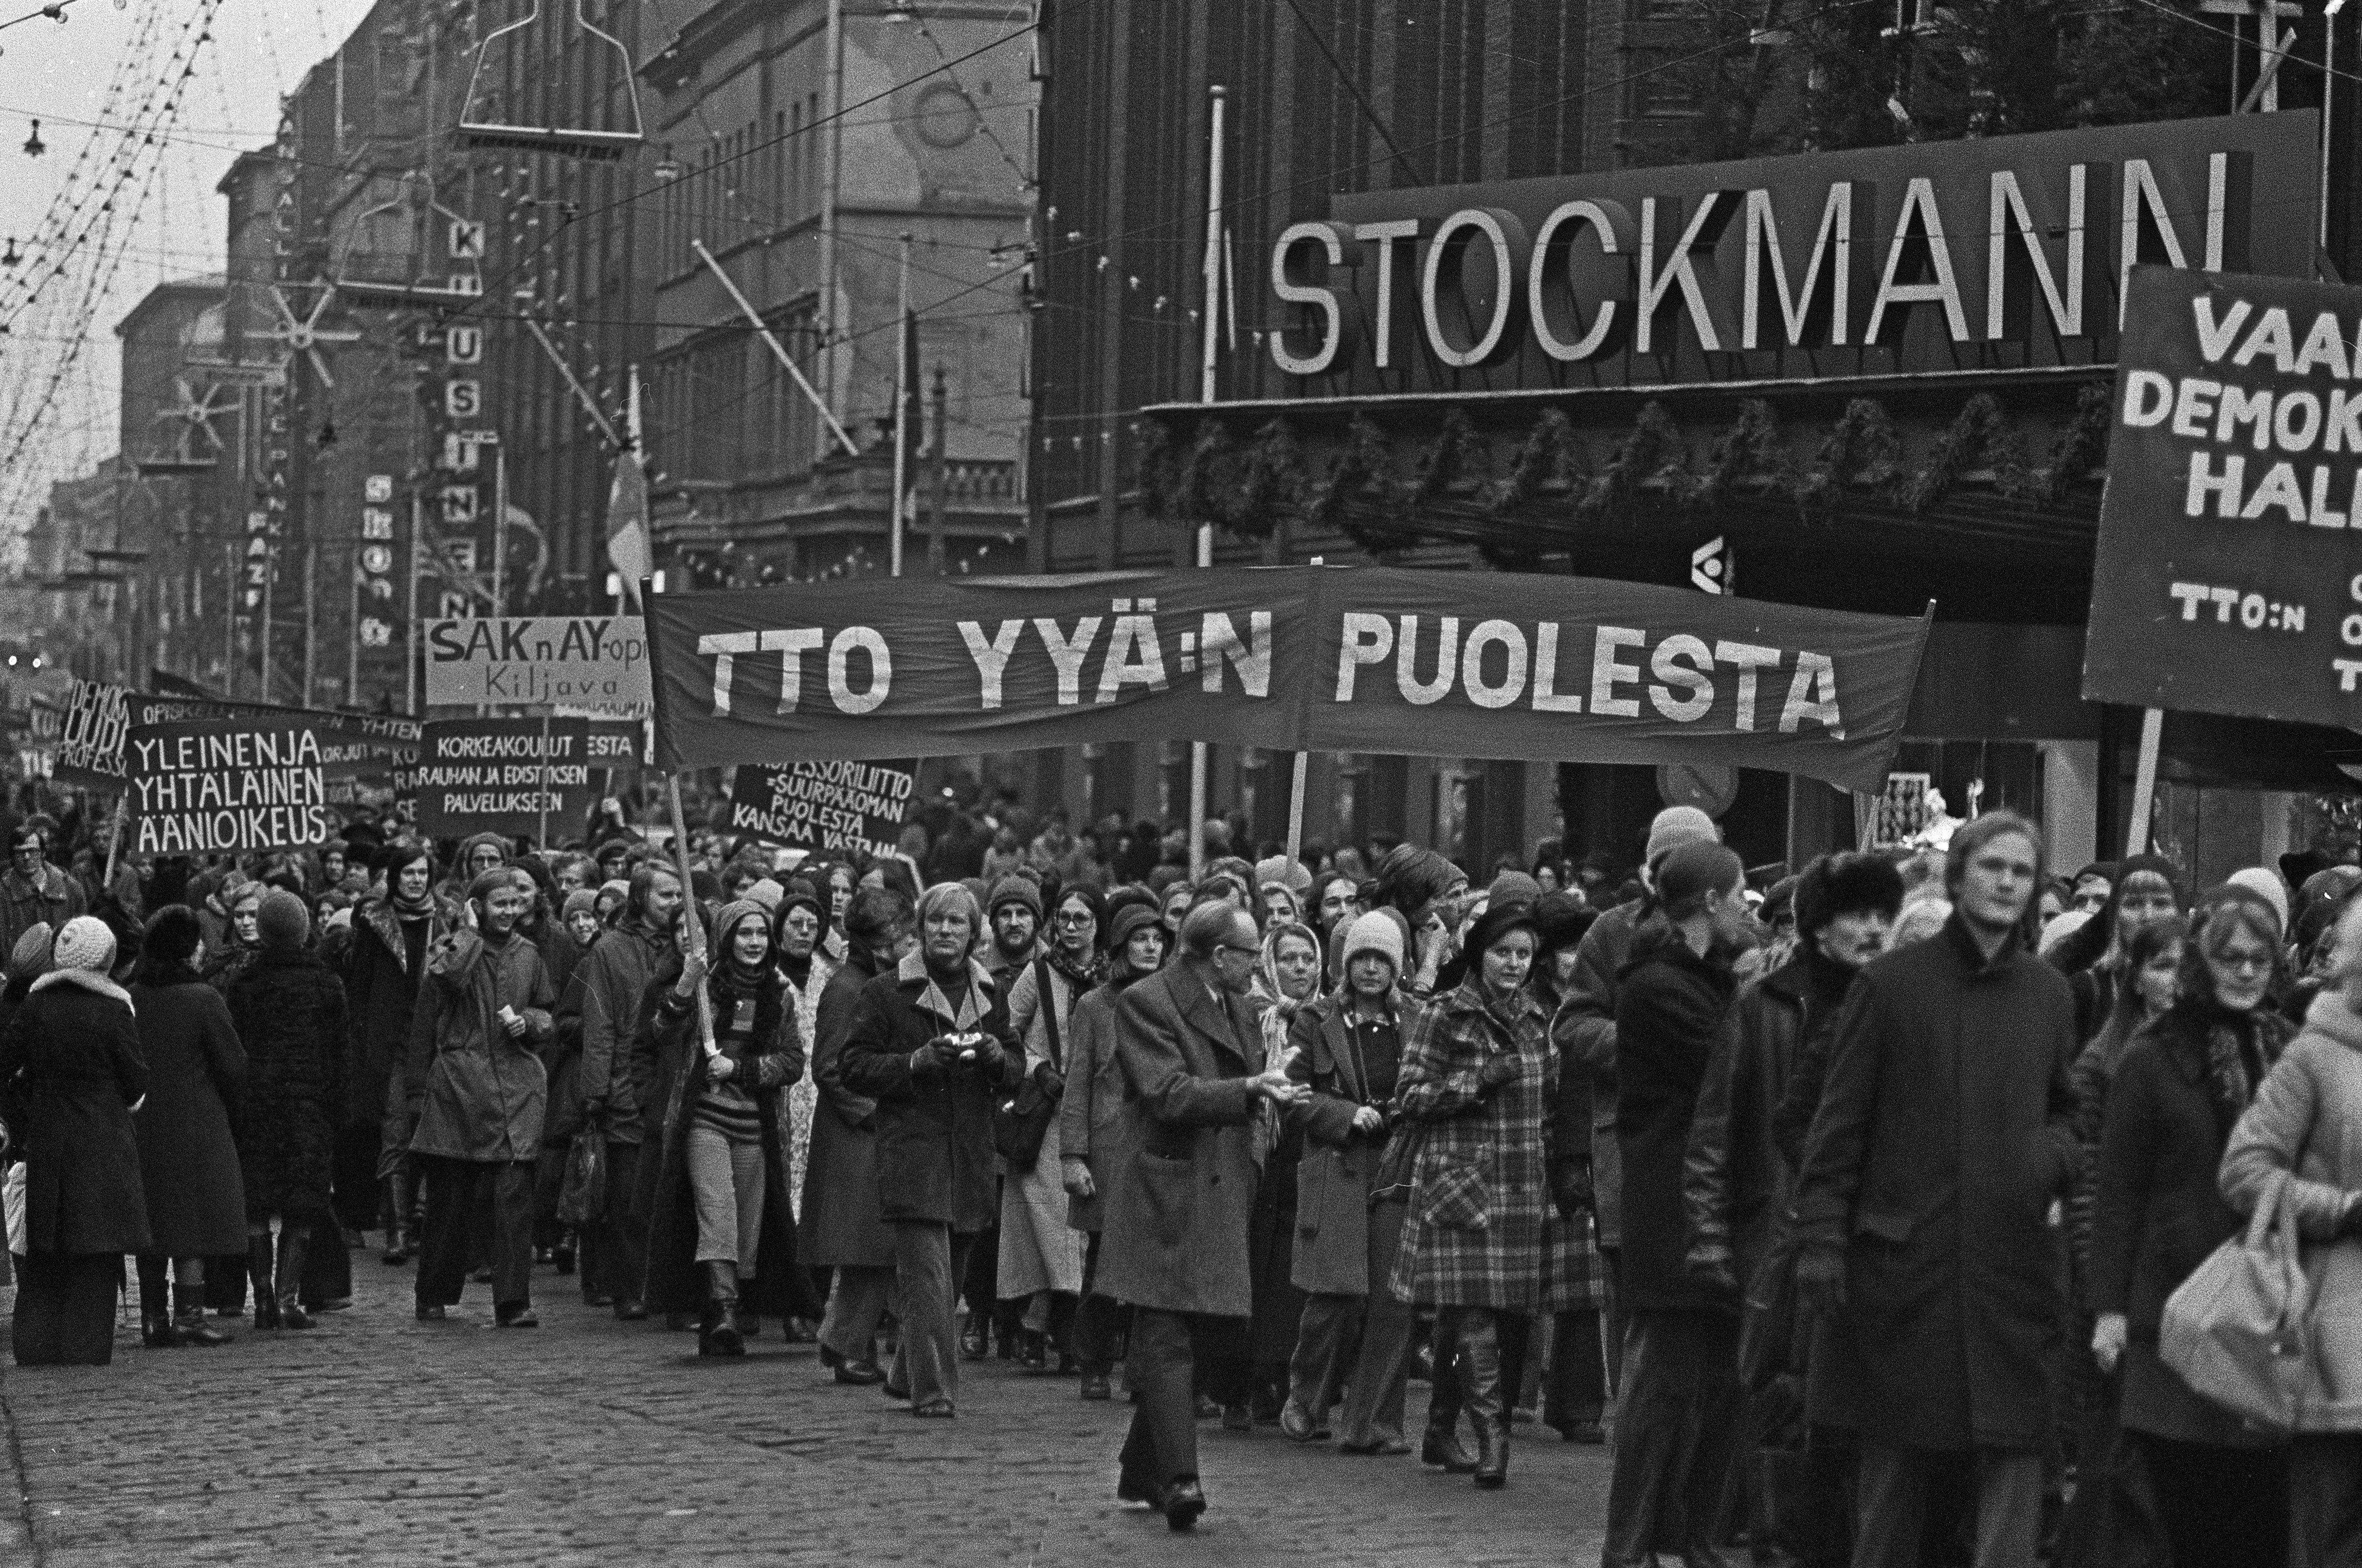 Mielenosoitus, jolla opiskelijaliike vaati yleistä ja yhtäläistä äänioikeutta (yyä) yliopistojen ja korkeakoulujen hallintoelinten valintaperusteeksi. Mielenosoittajien kulkue Stockmannin tavaratalon edustalla Aleksanterinkadulla.